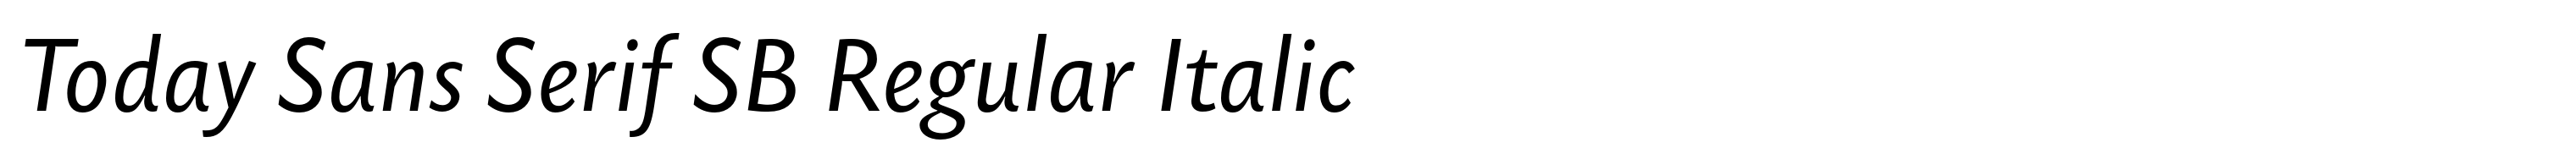 Today Sans Serif SB Regular Italic